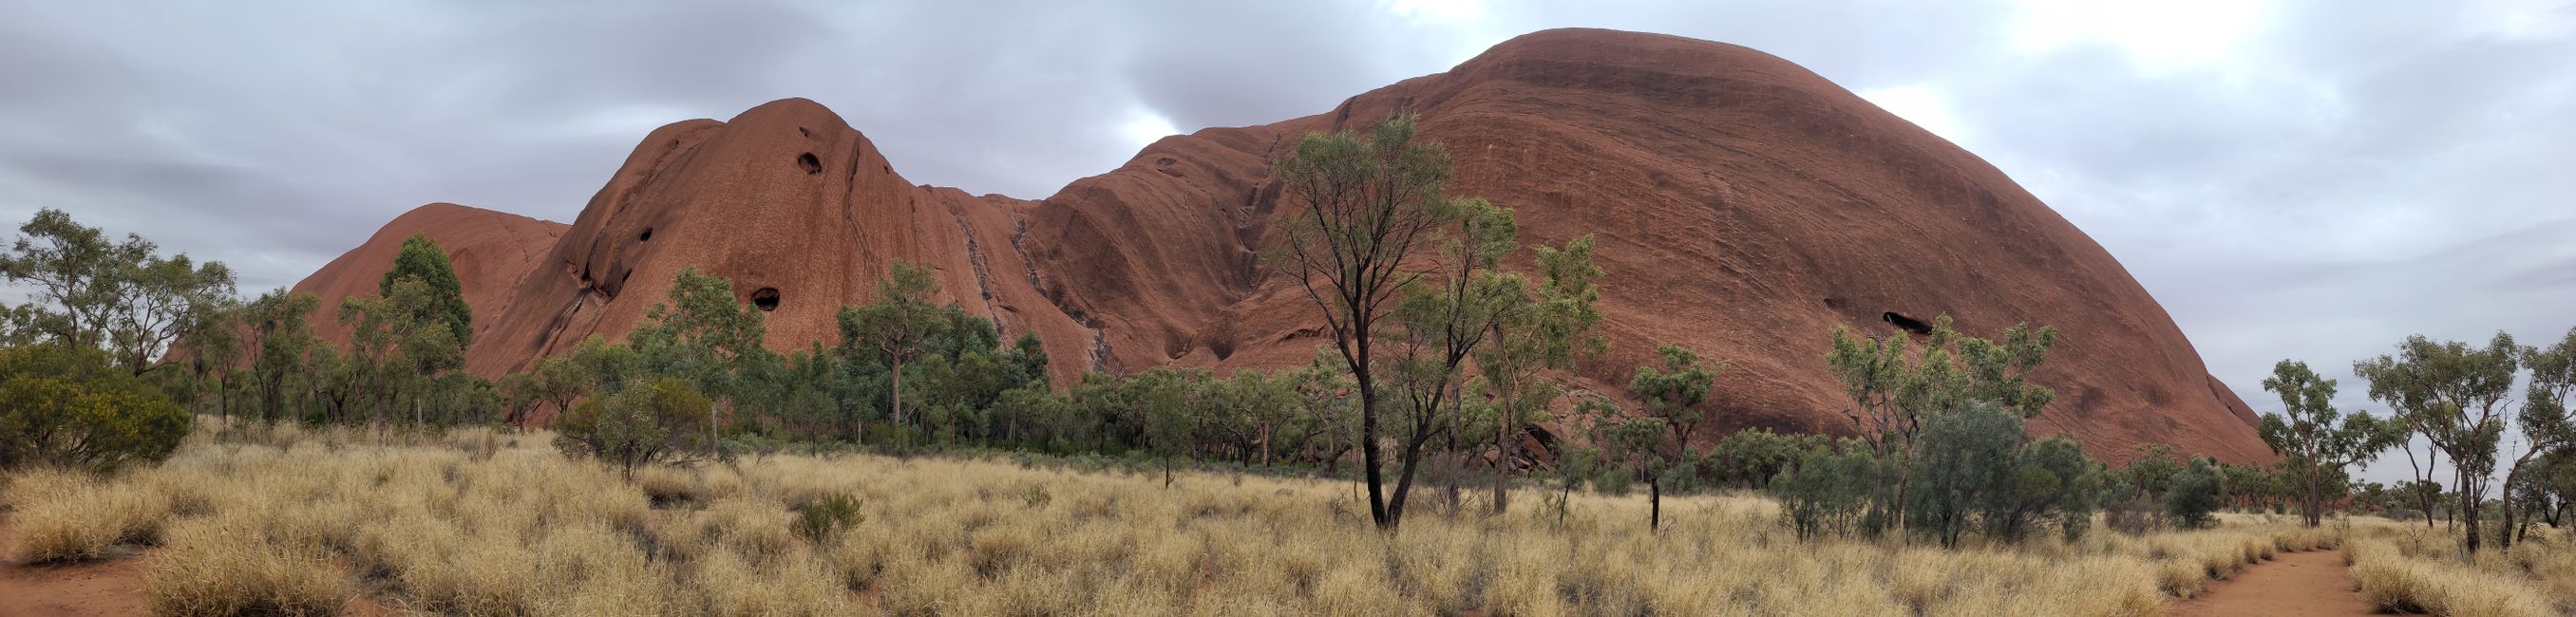 Day 52 - Uluru / Ayers Rock